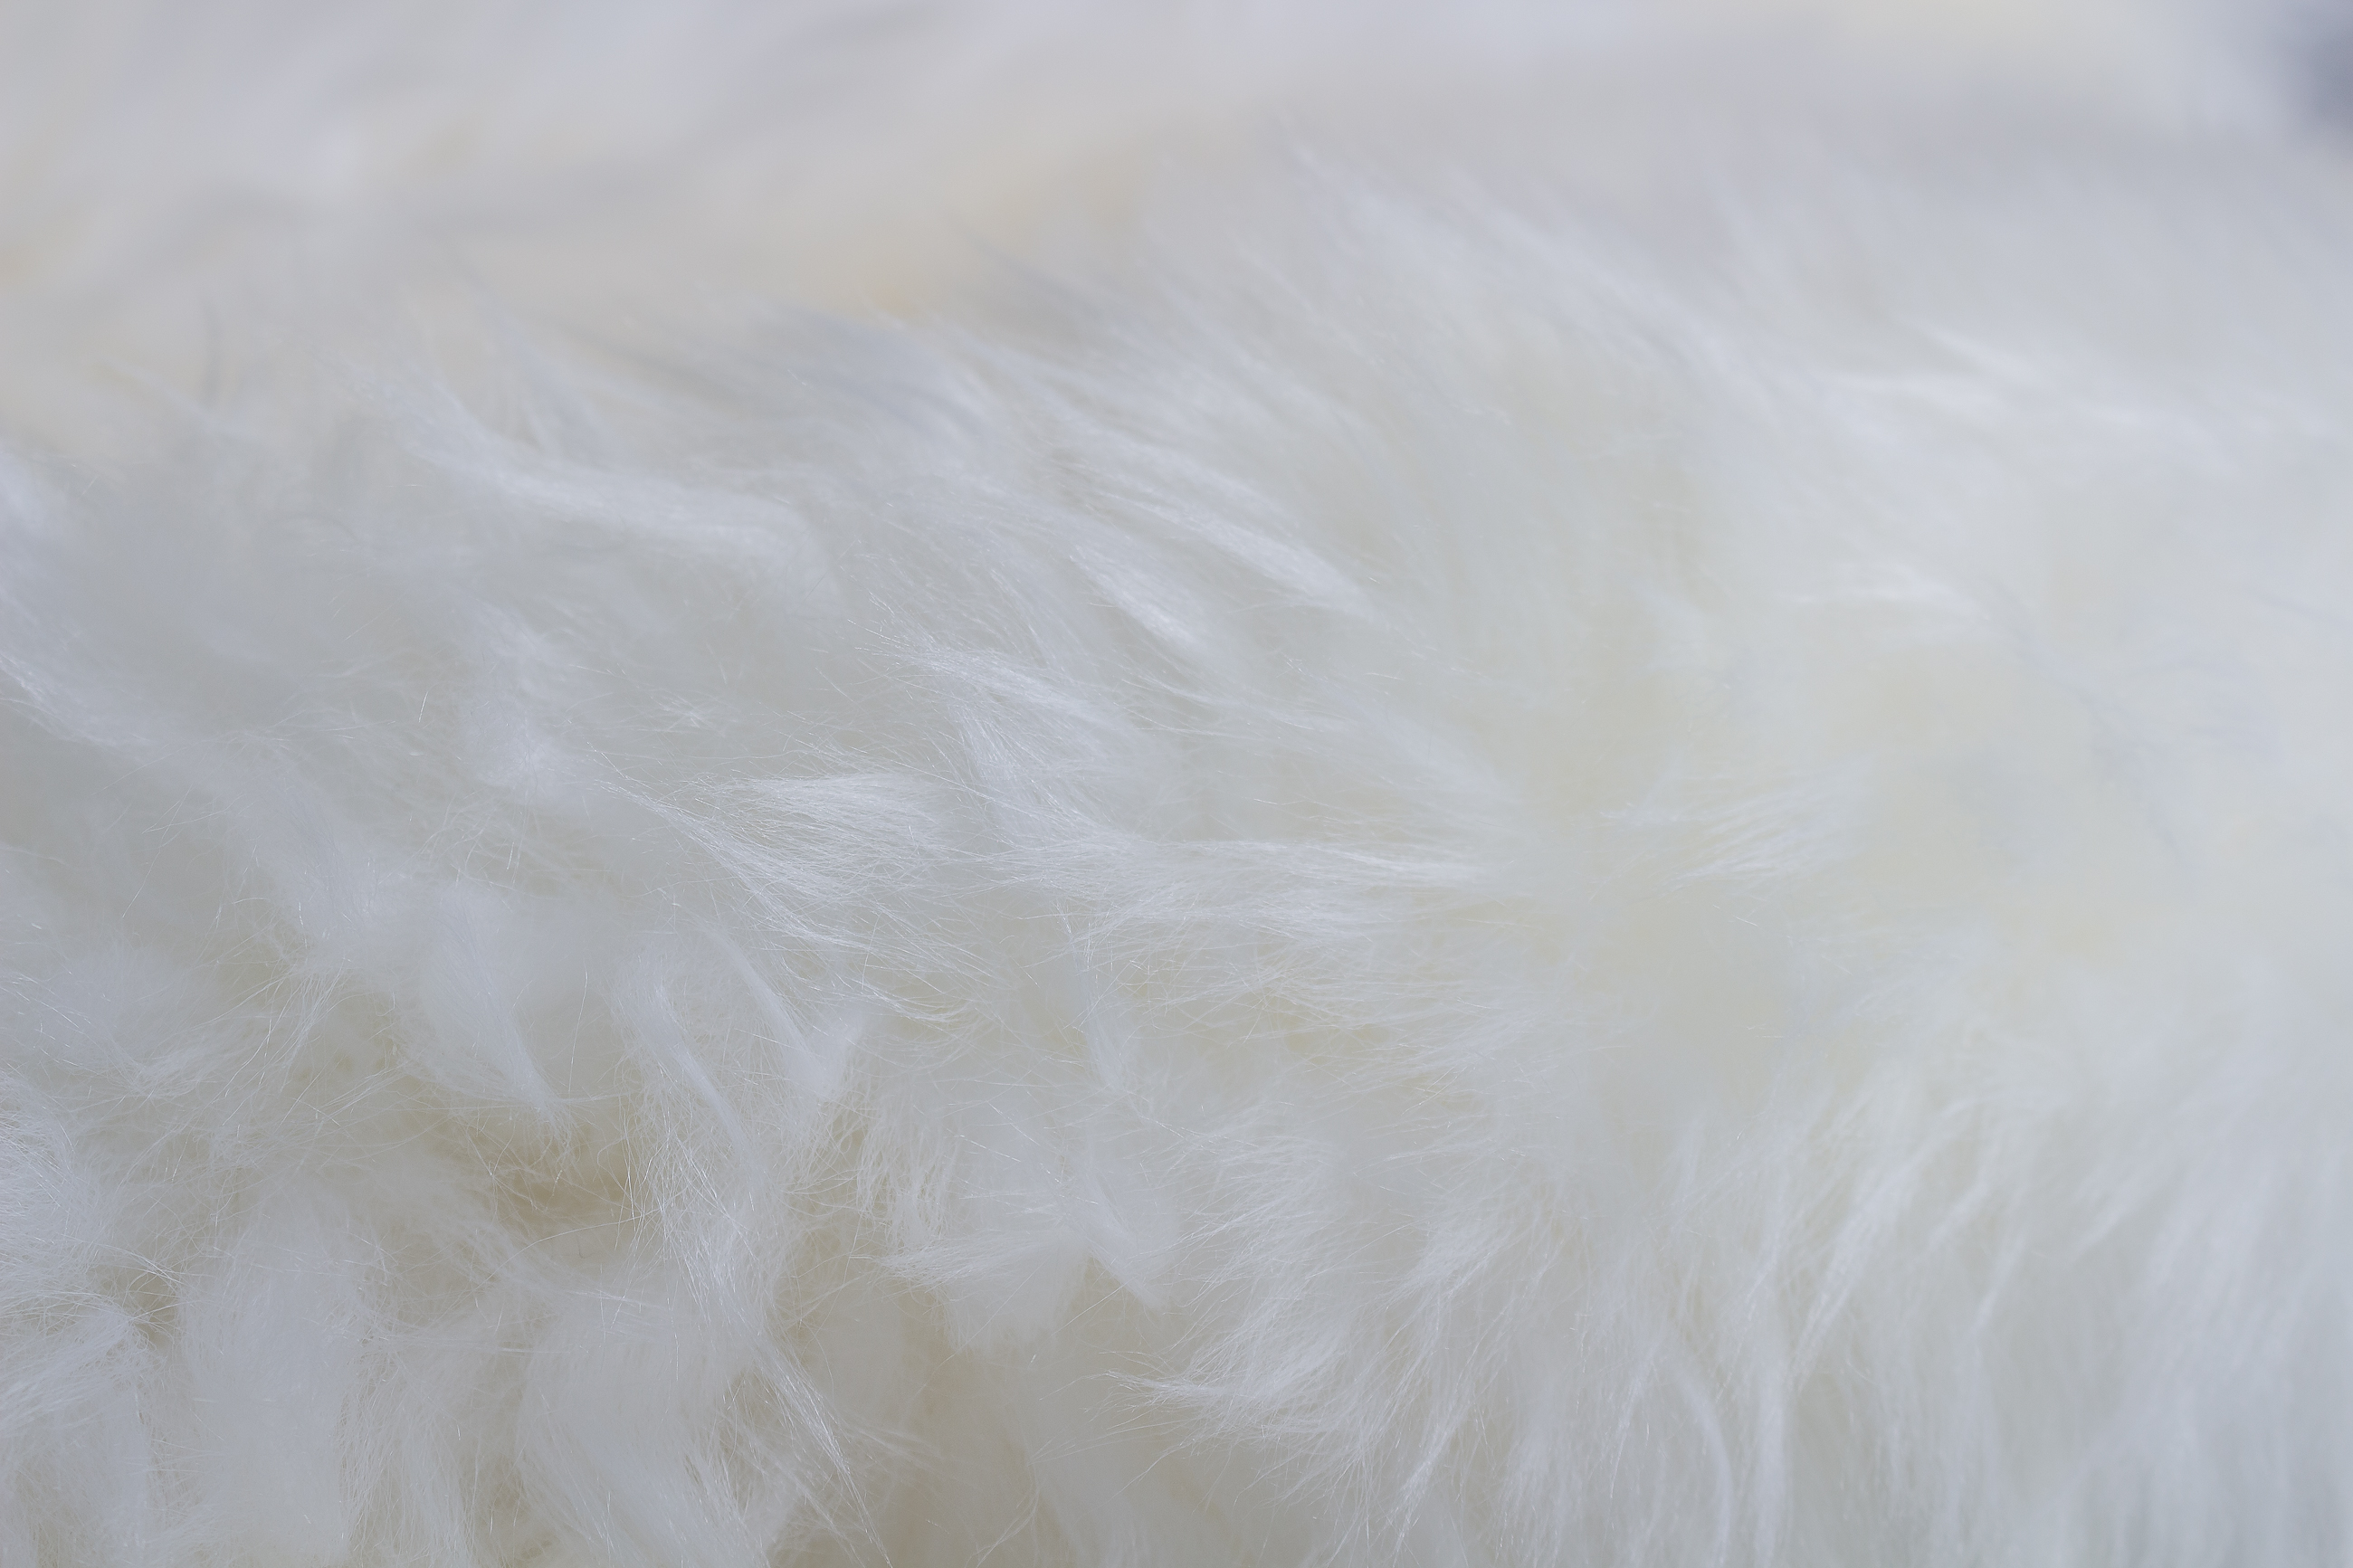 Australian Lamb Blanket - Lamb Fur Carpet in Natural White